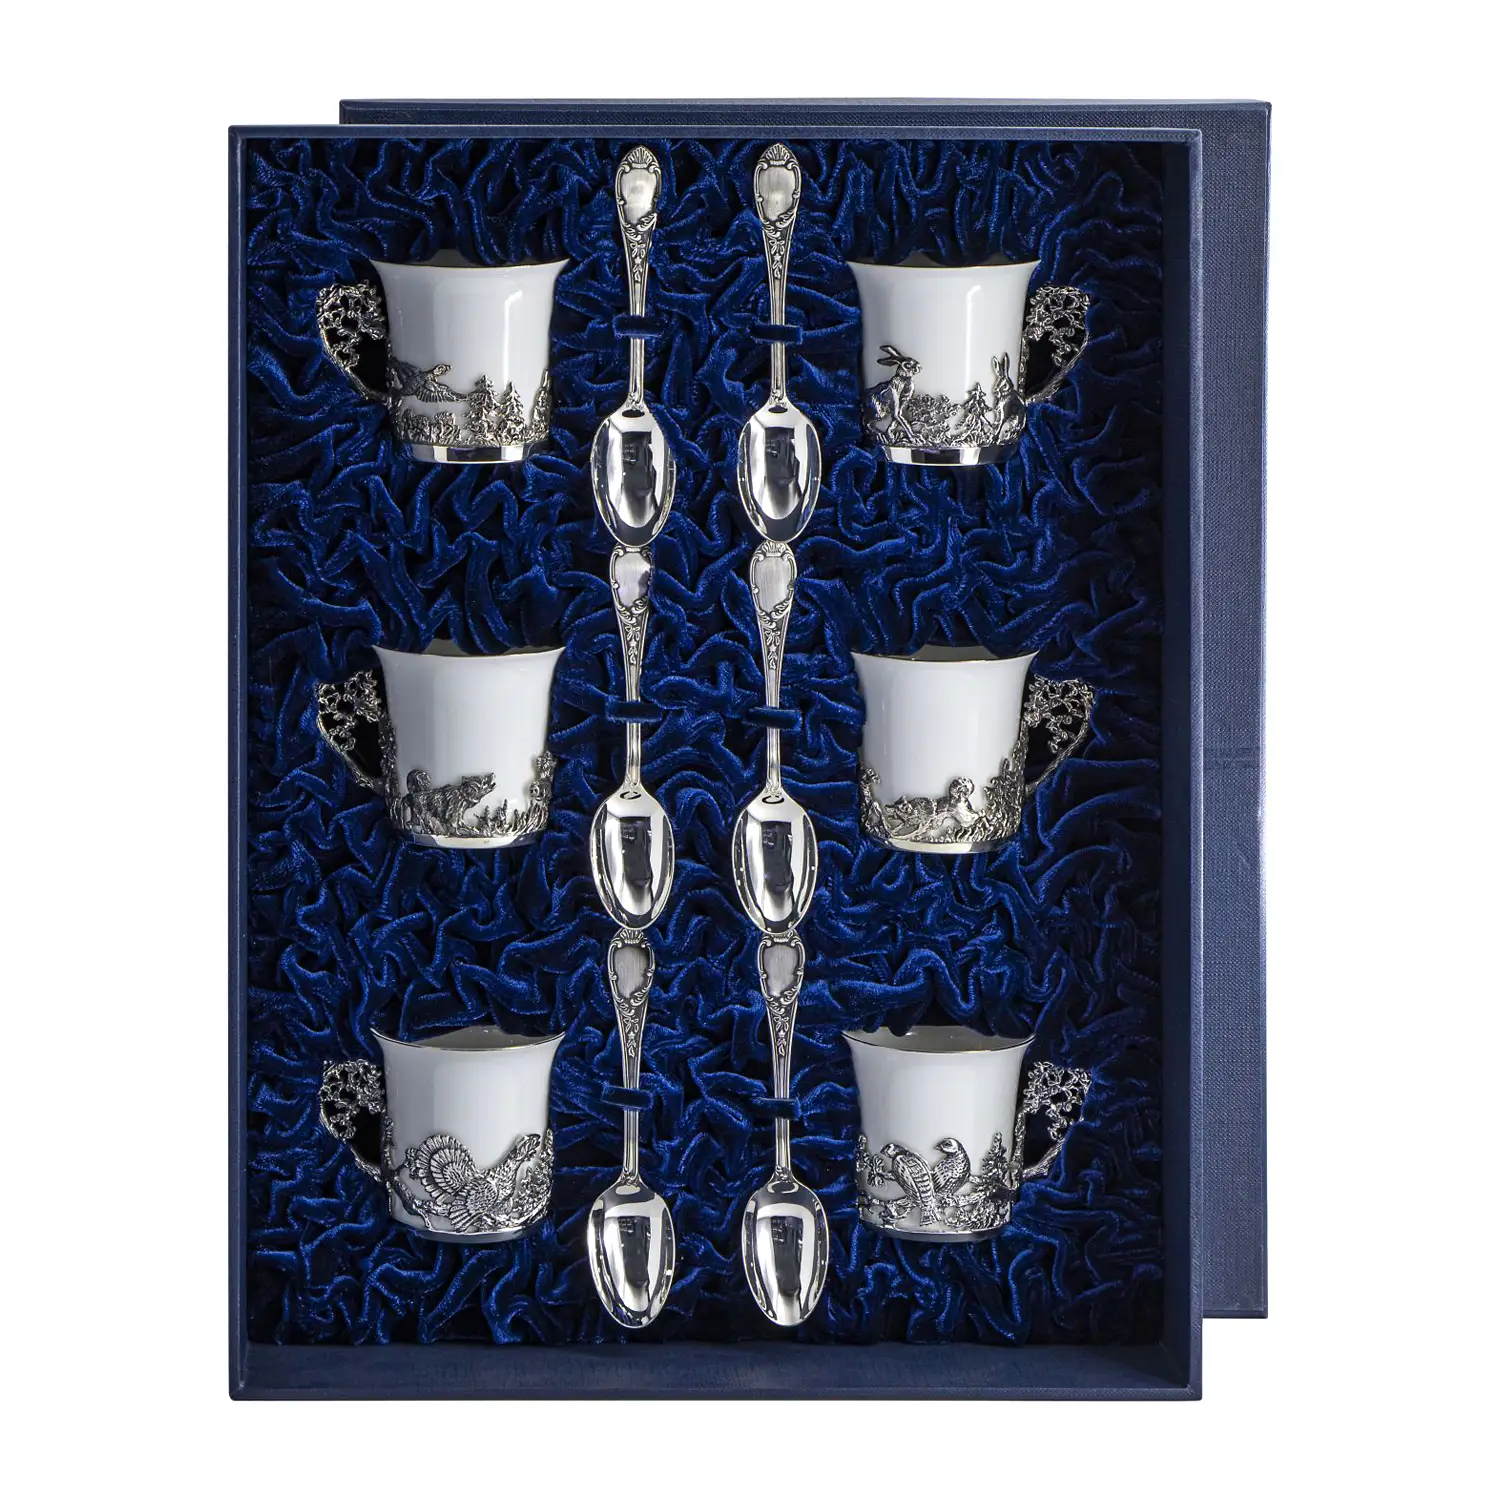 Набор кофейных чашек Охотничьи: ложка, чашка (Серебро 925) набор кофейных чашек зайцы ложка чашка серебро 925